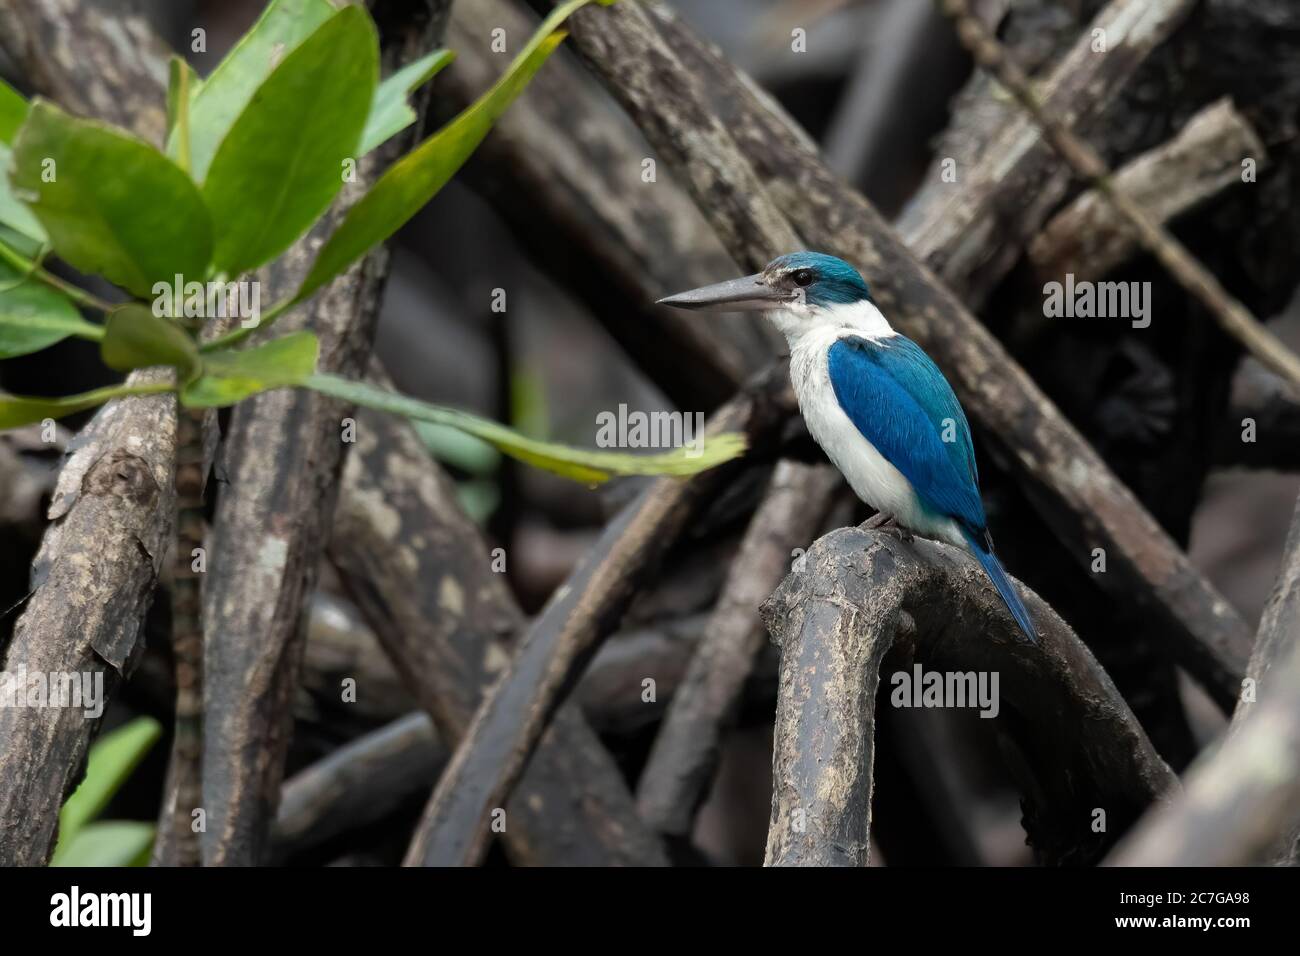 Mangroveneisvogel, der auf einem Mnagrovenzweig steht Stockfoto